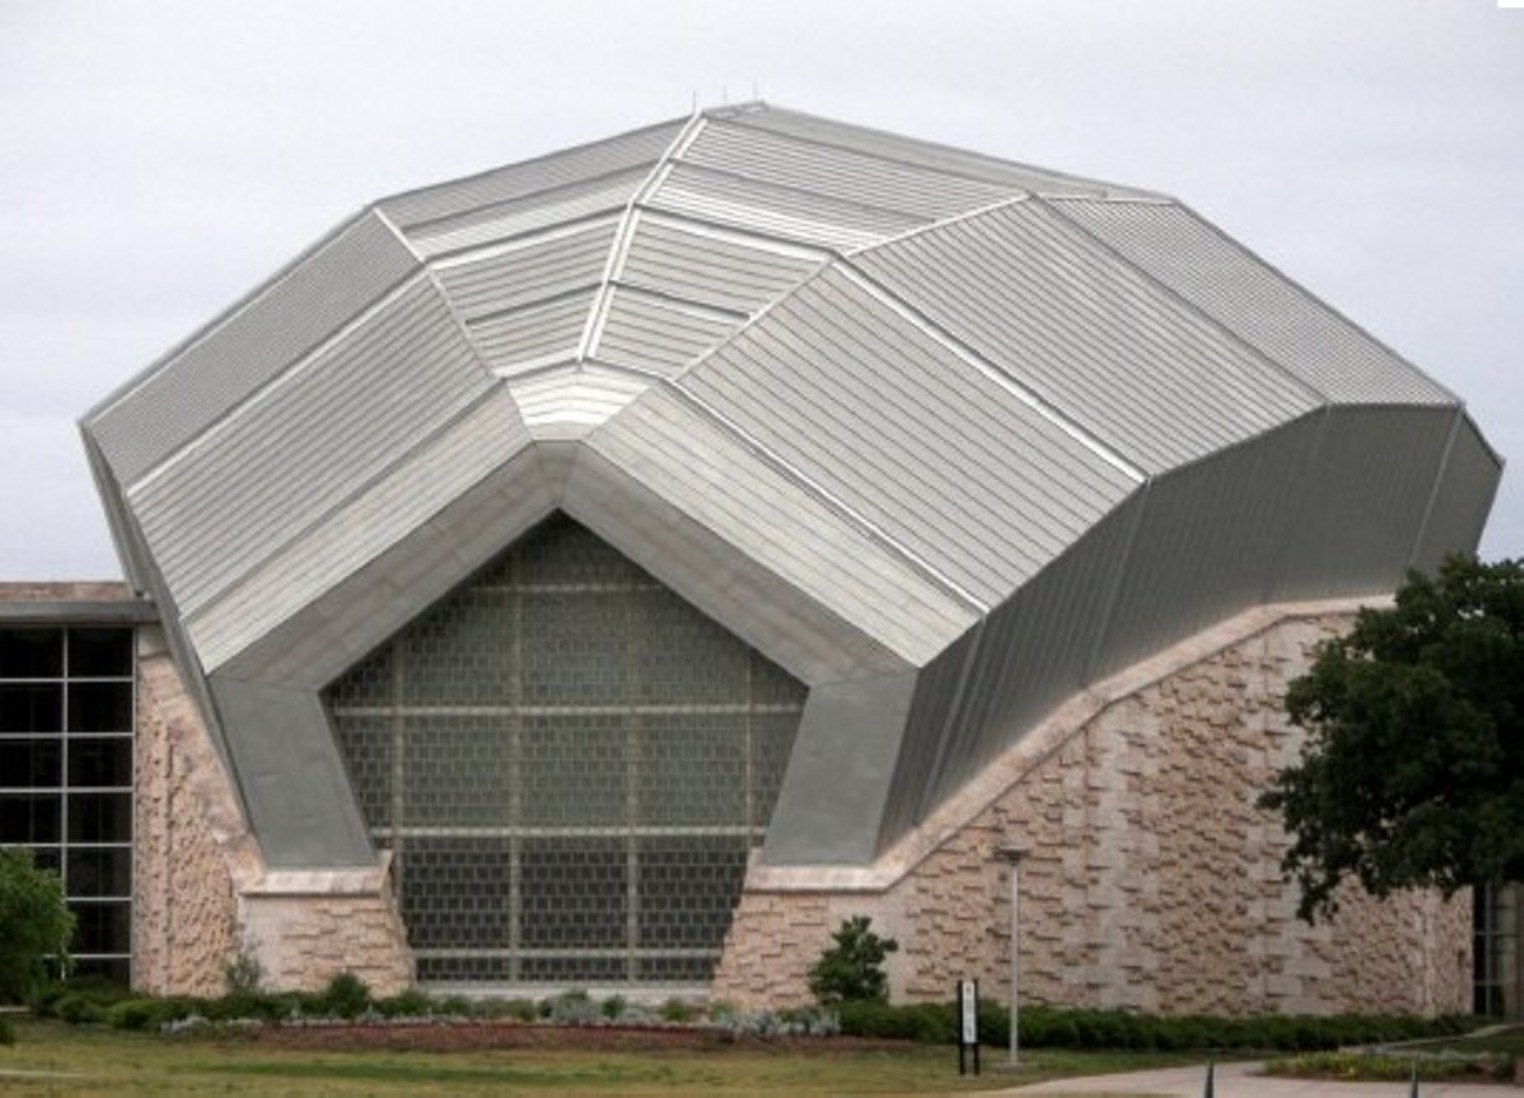 NorthPark Center – Dallas, Tripomatic